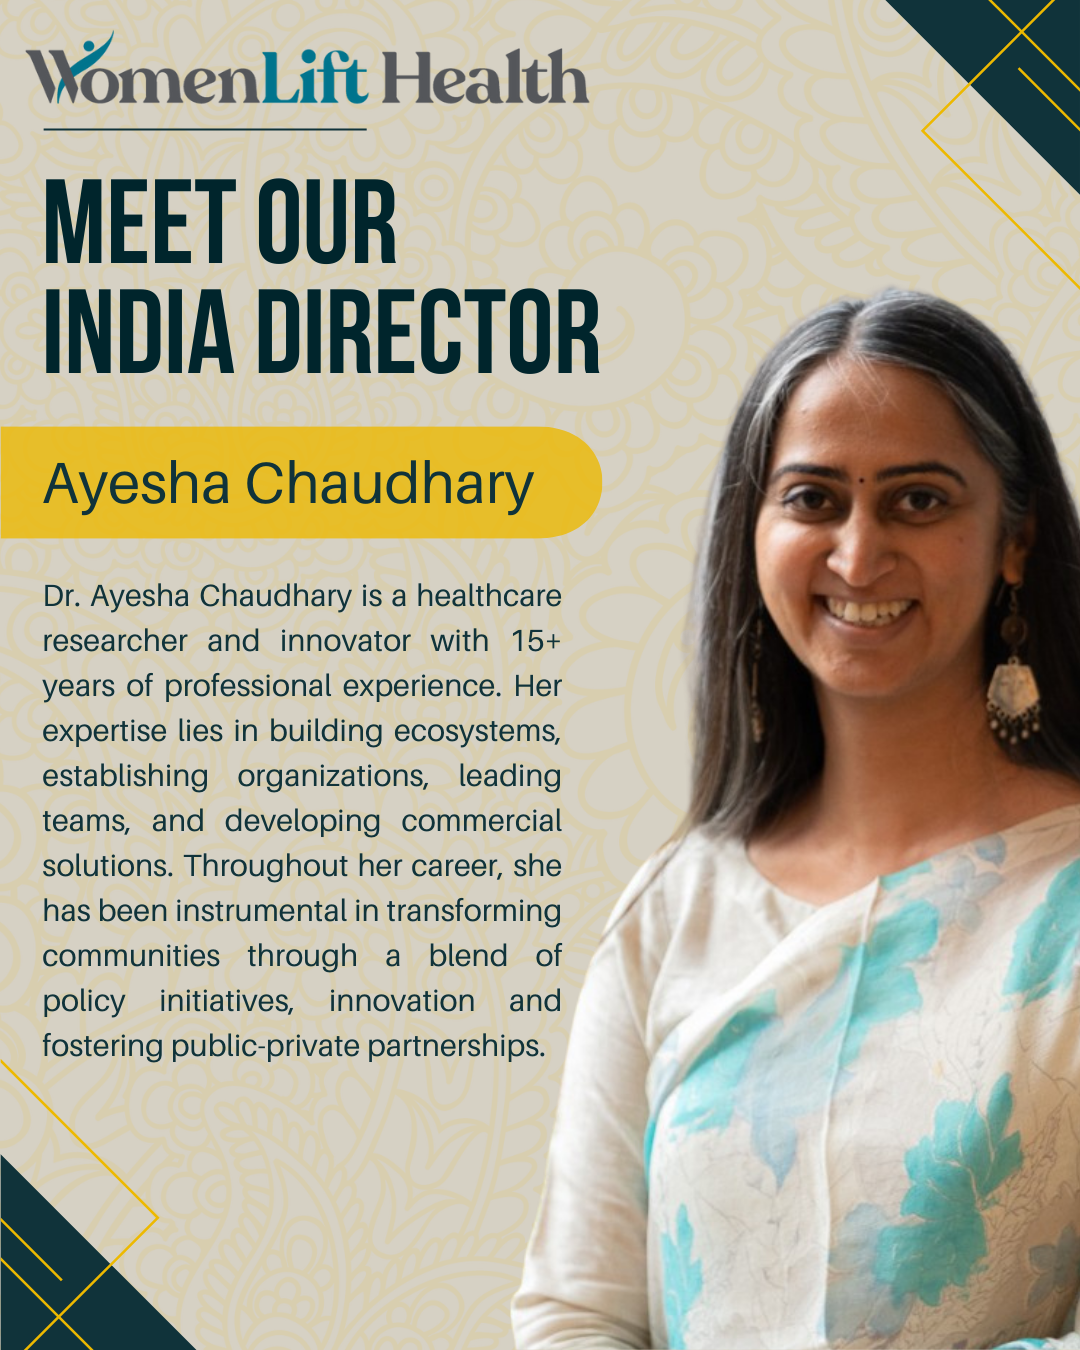 Ayesha Chaudhary, India Director